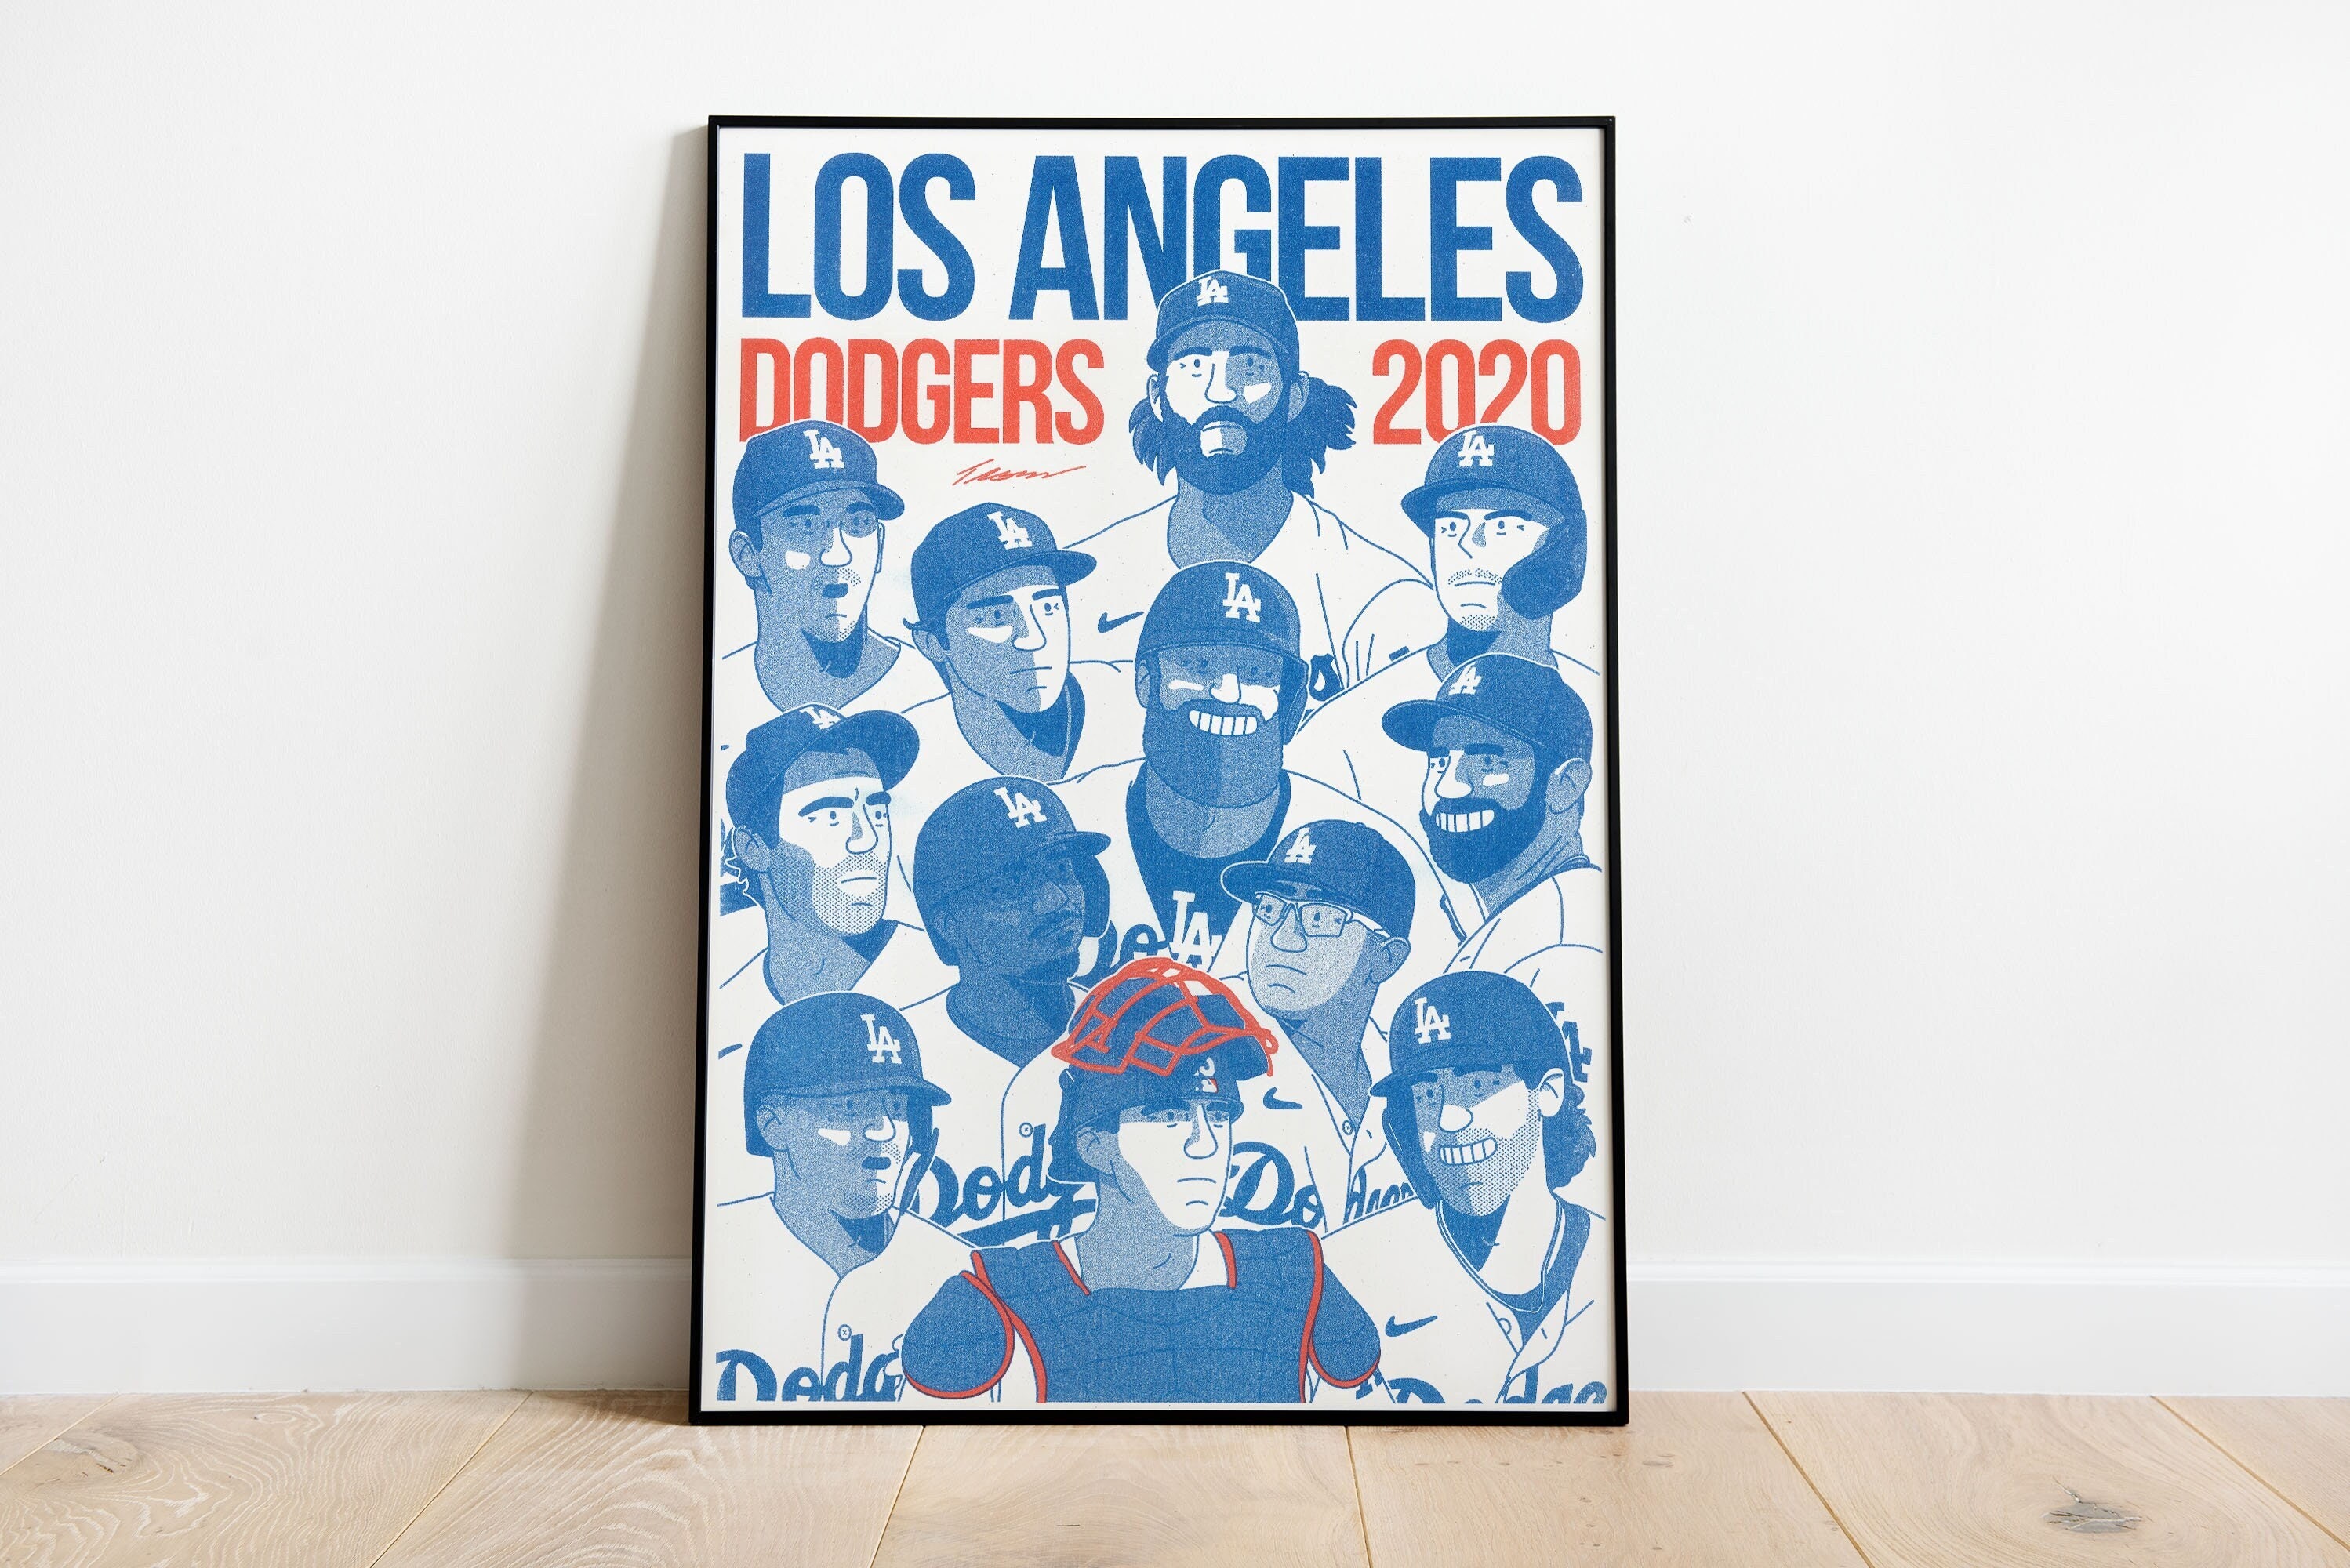 Dodgers 2020 season in review: Austin Barnes - True Blue LA